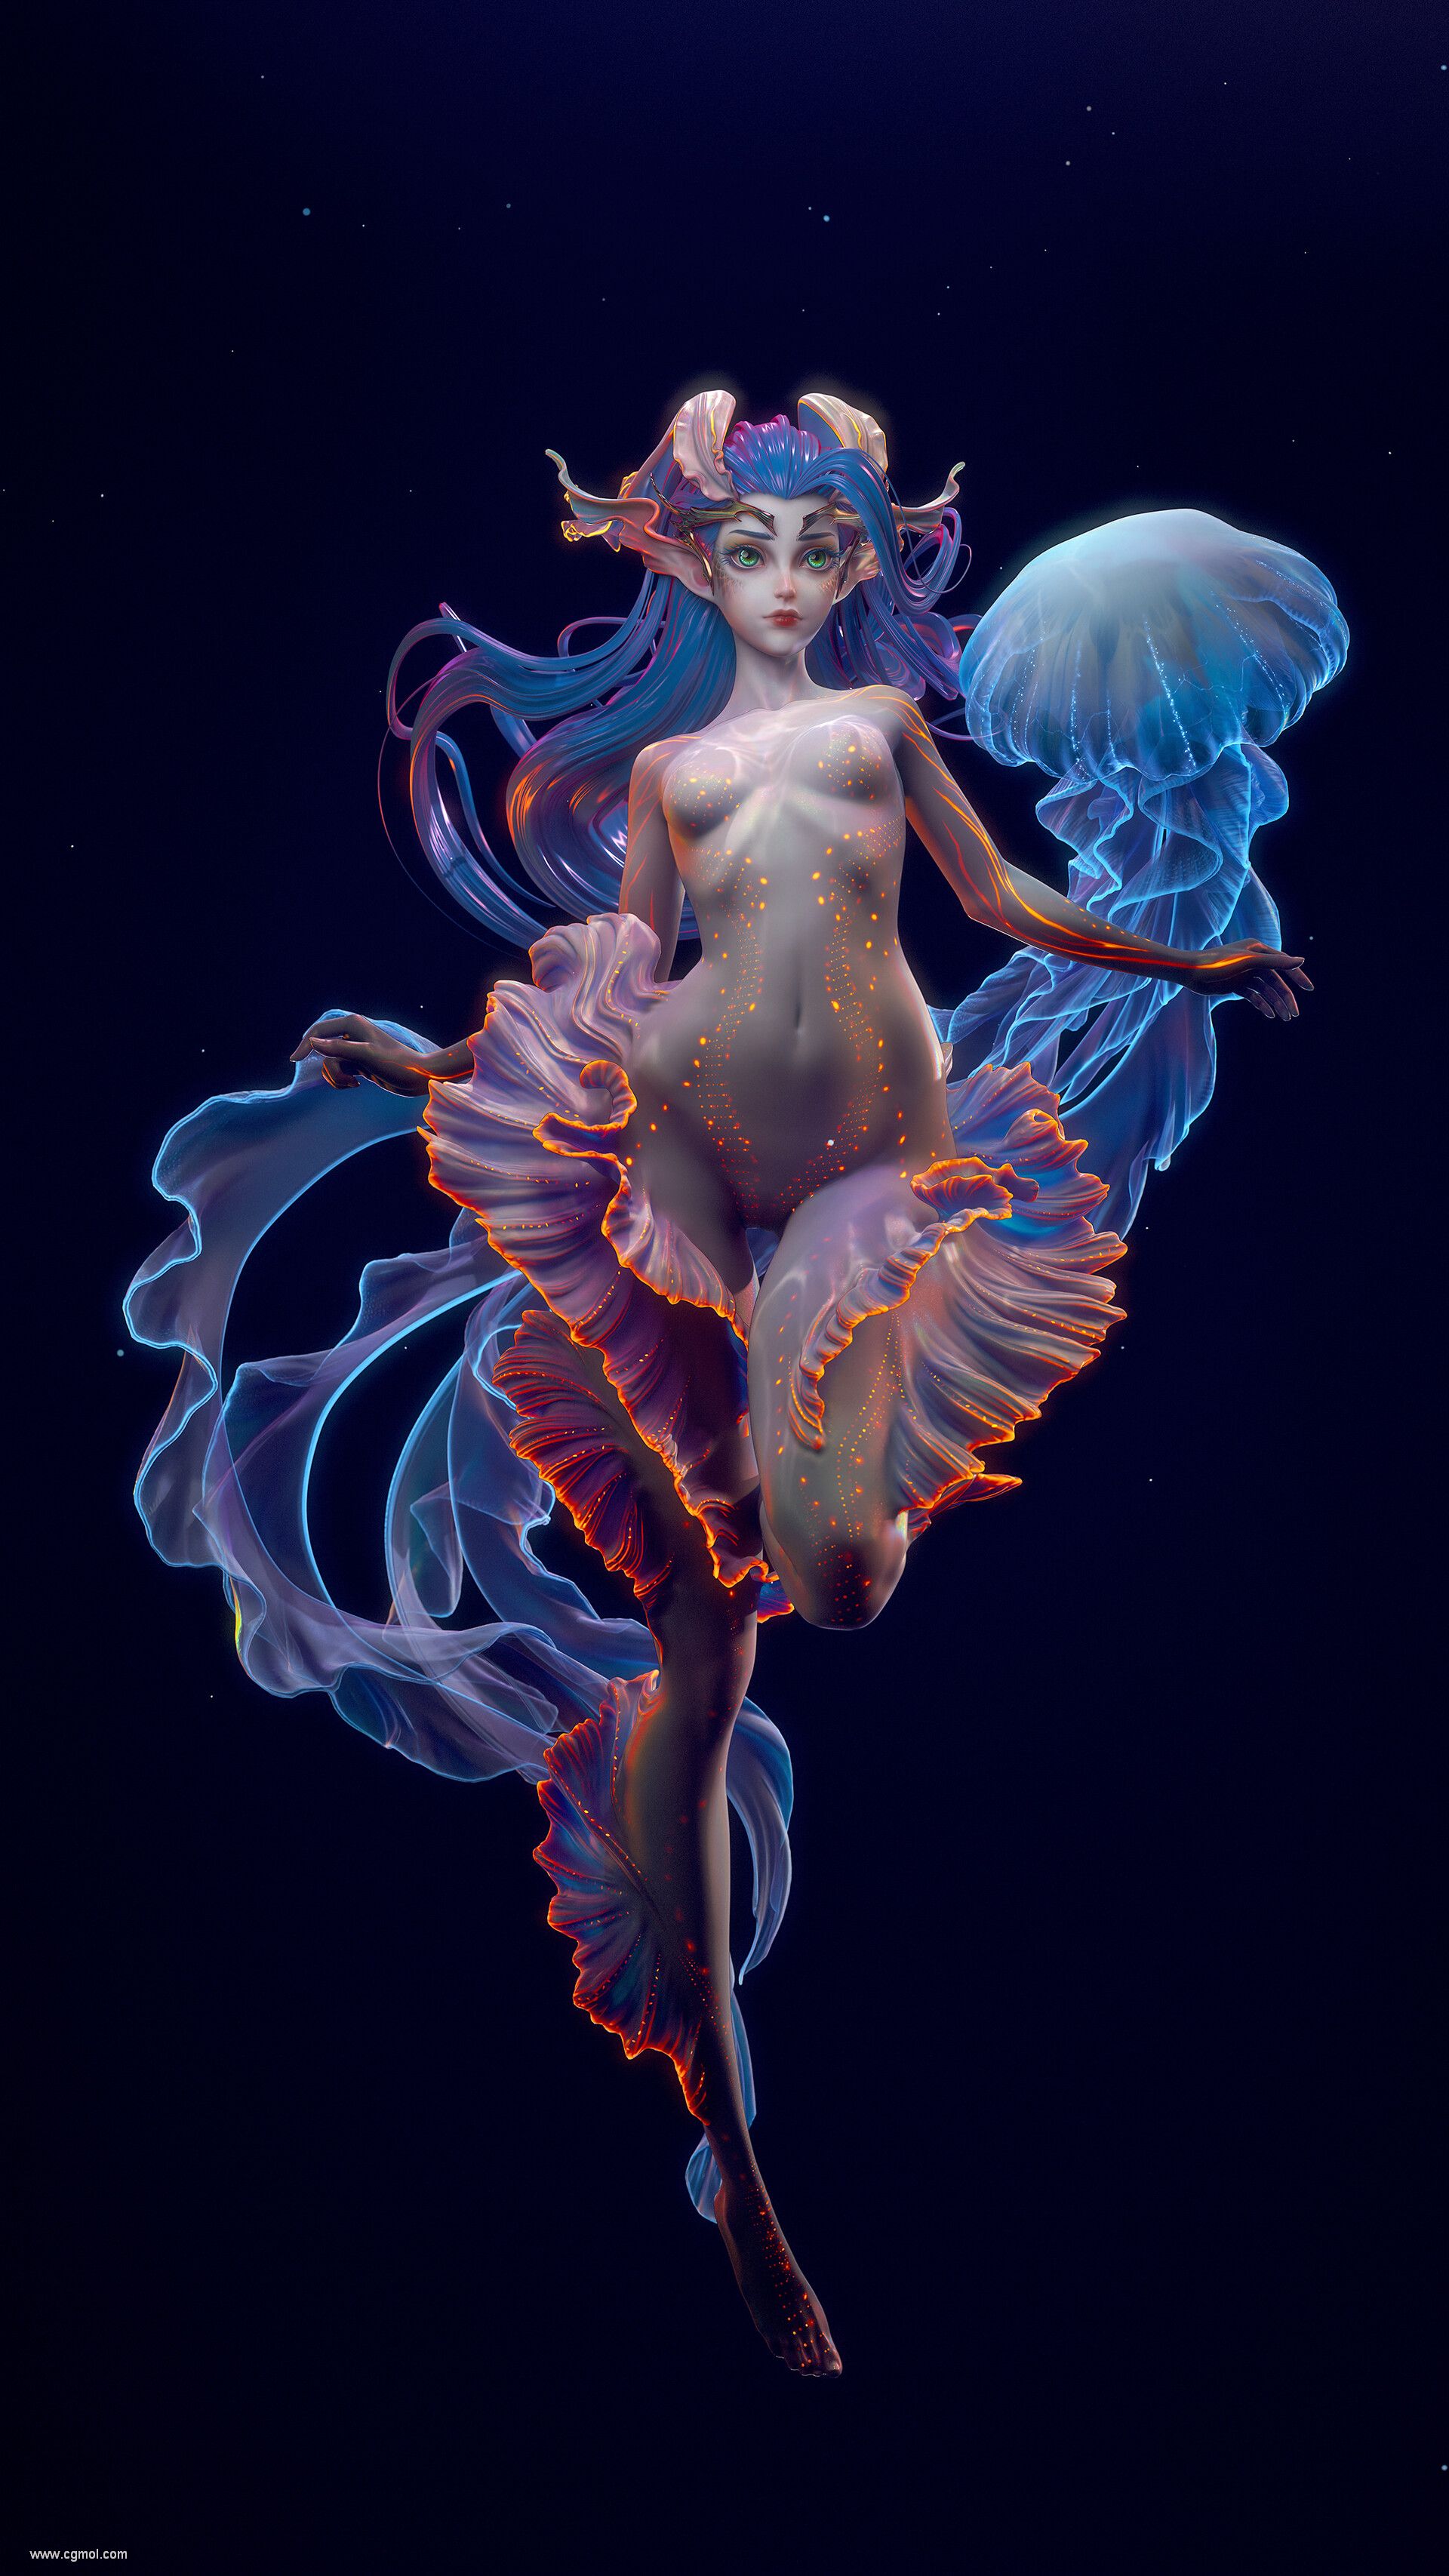 shun-jellyfish02